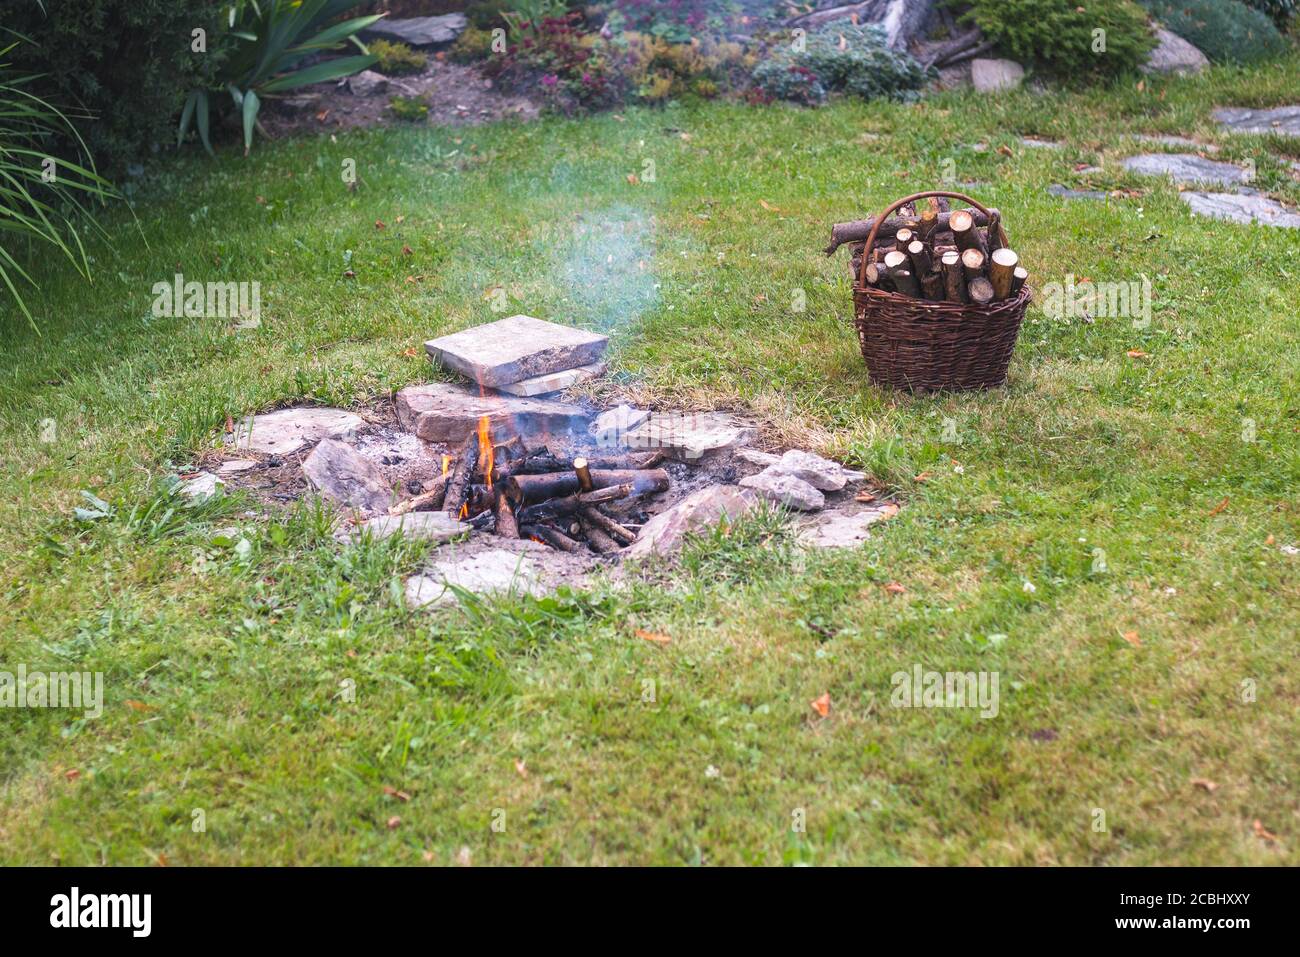 fuoco di campo nel giardino, accanto ad un cesto con legna da ardere Foto Stock